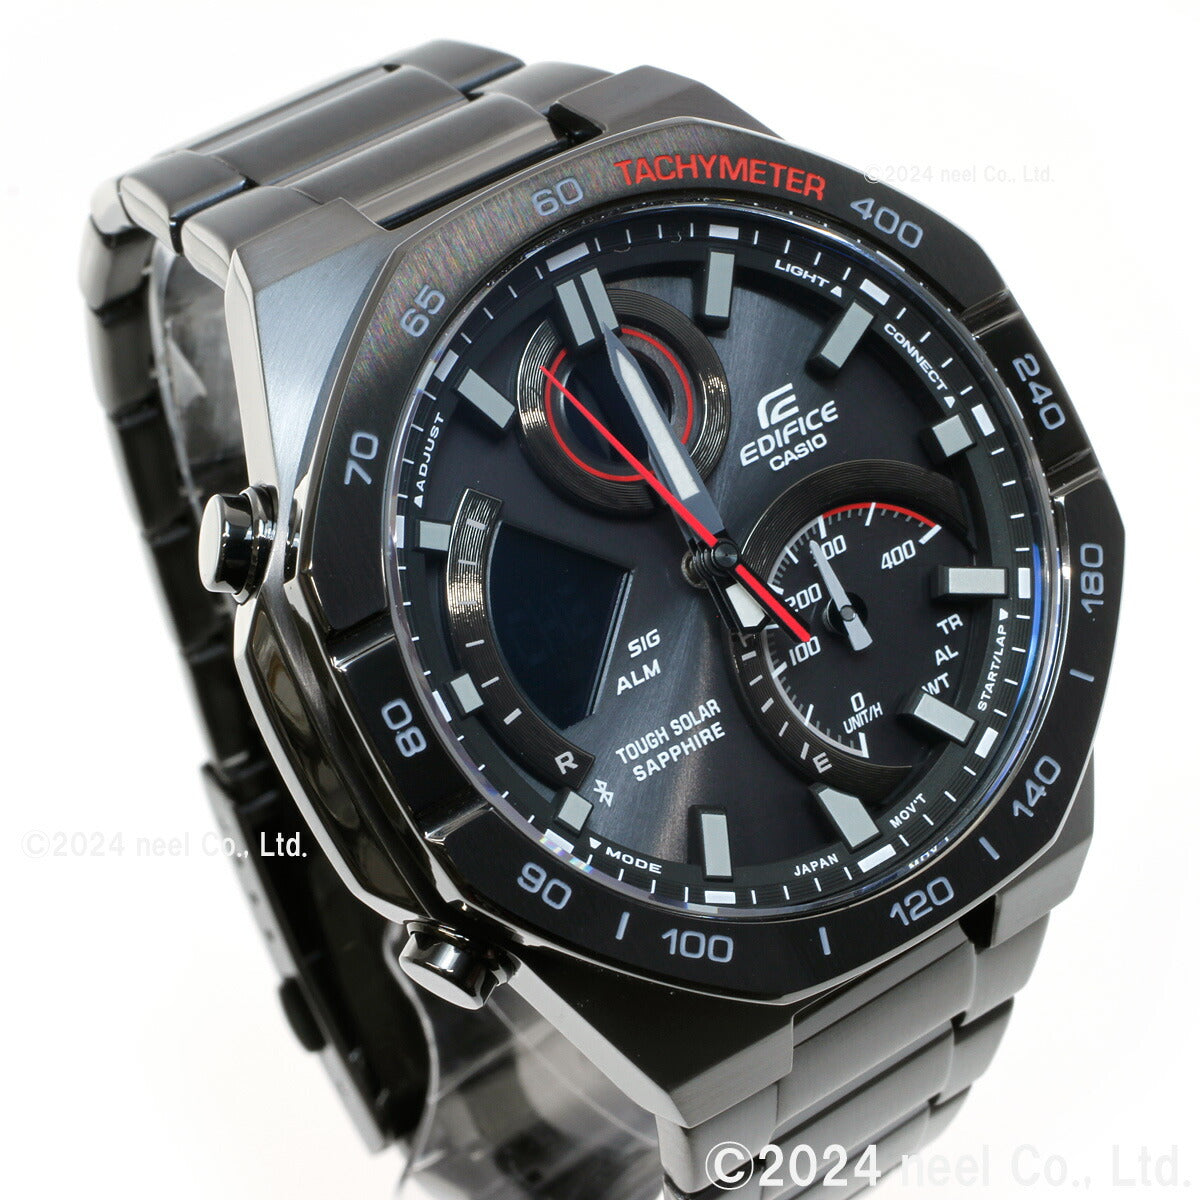 カシオ エディフィス CASIO EDIFICE ソーラー 腕時計 メンズ タフソーラー クロノグラフ ECB-950YDC-1AJF スマートフォンリンク